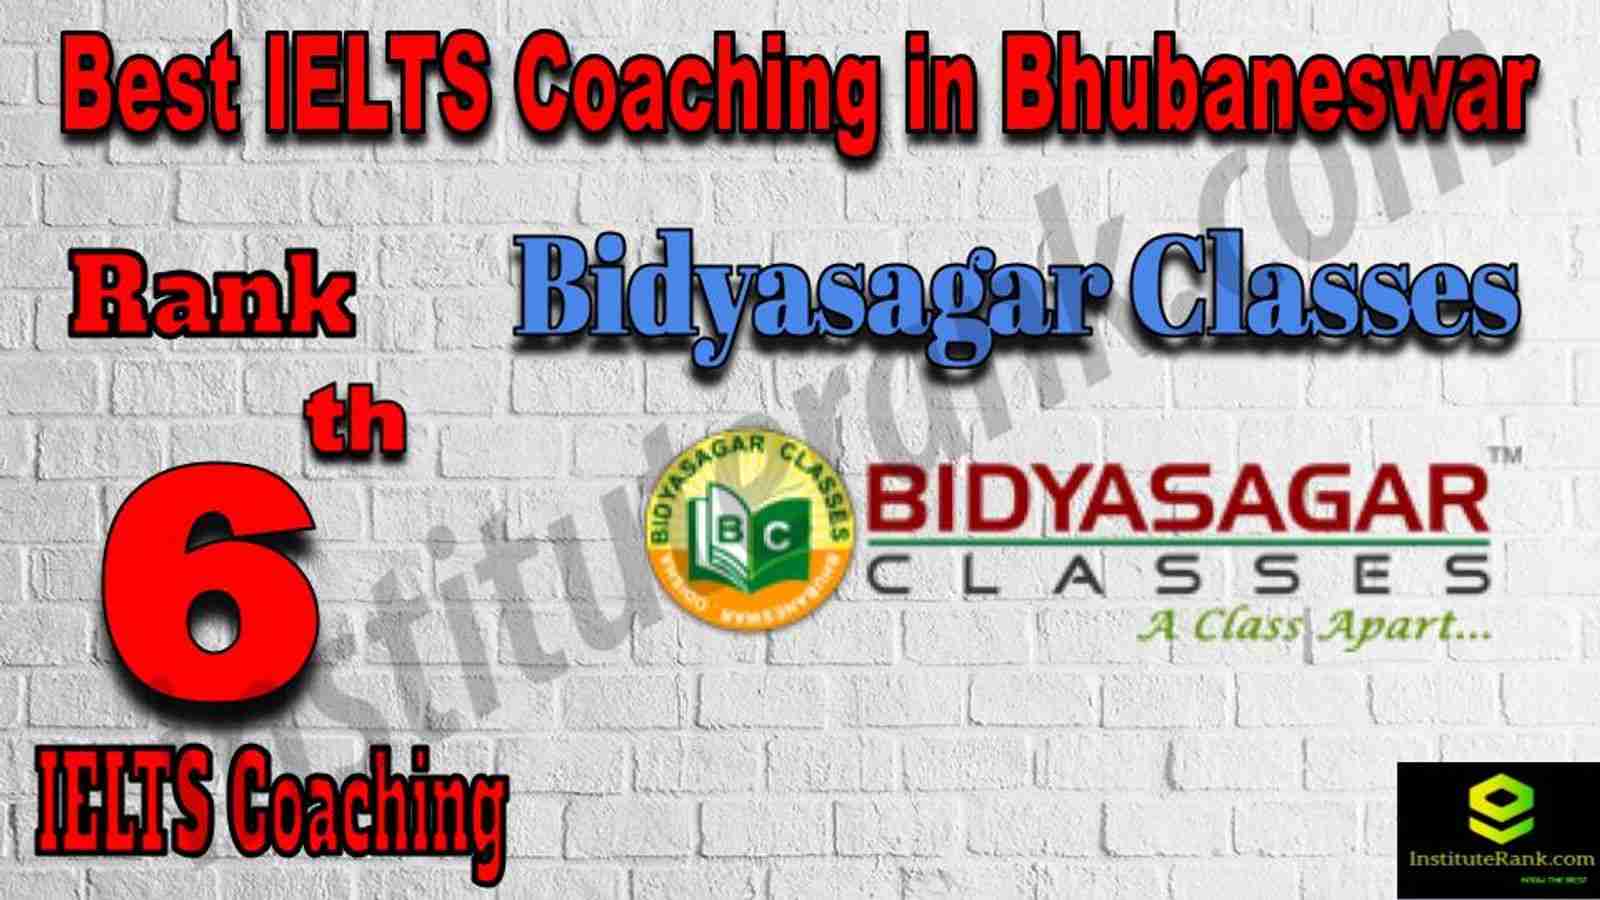 6th Best IELTS Coaching in Bhubaneswar